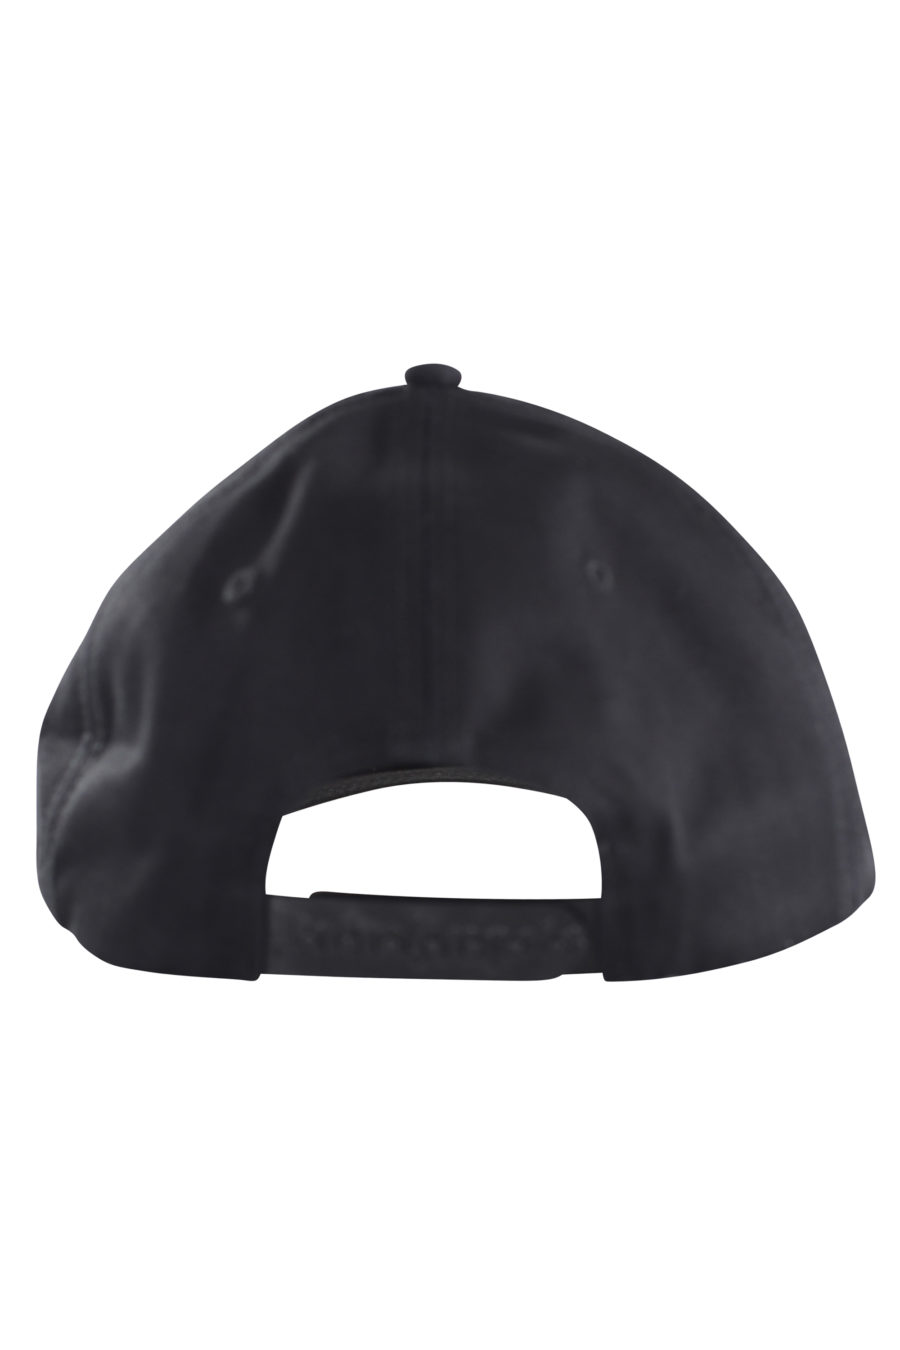 Schwarze Kappe mit geprägtem Logo auf dem Schirm - IMG 9617